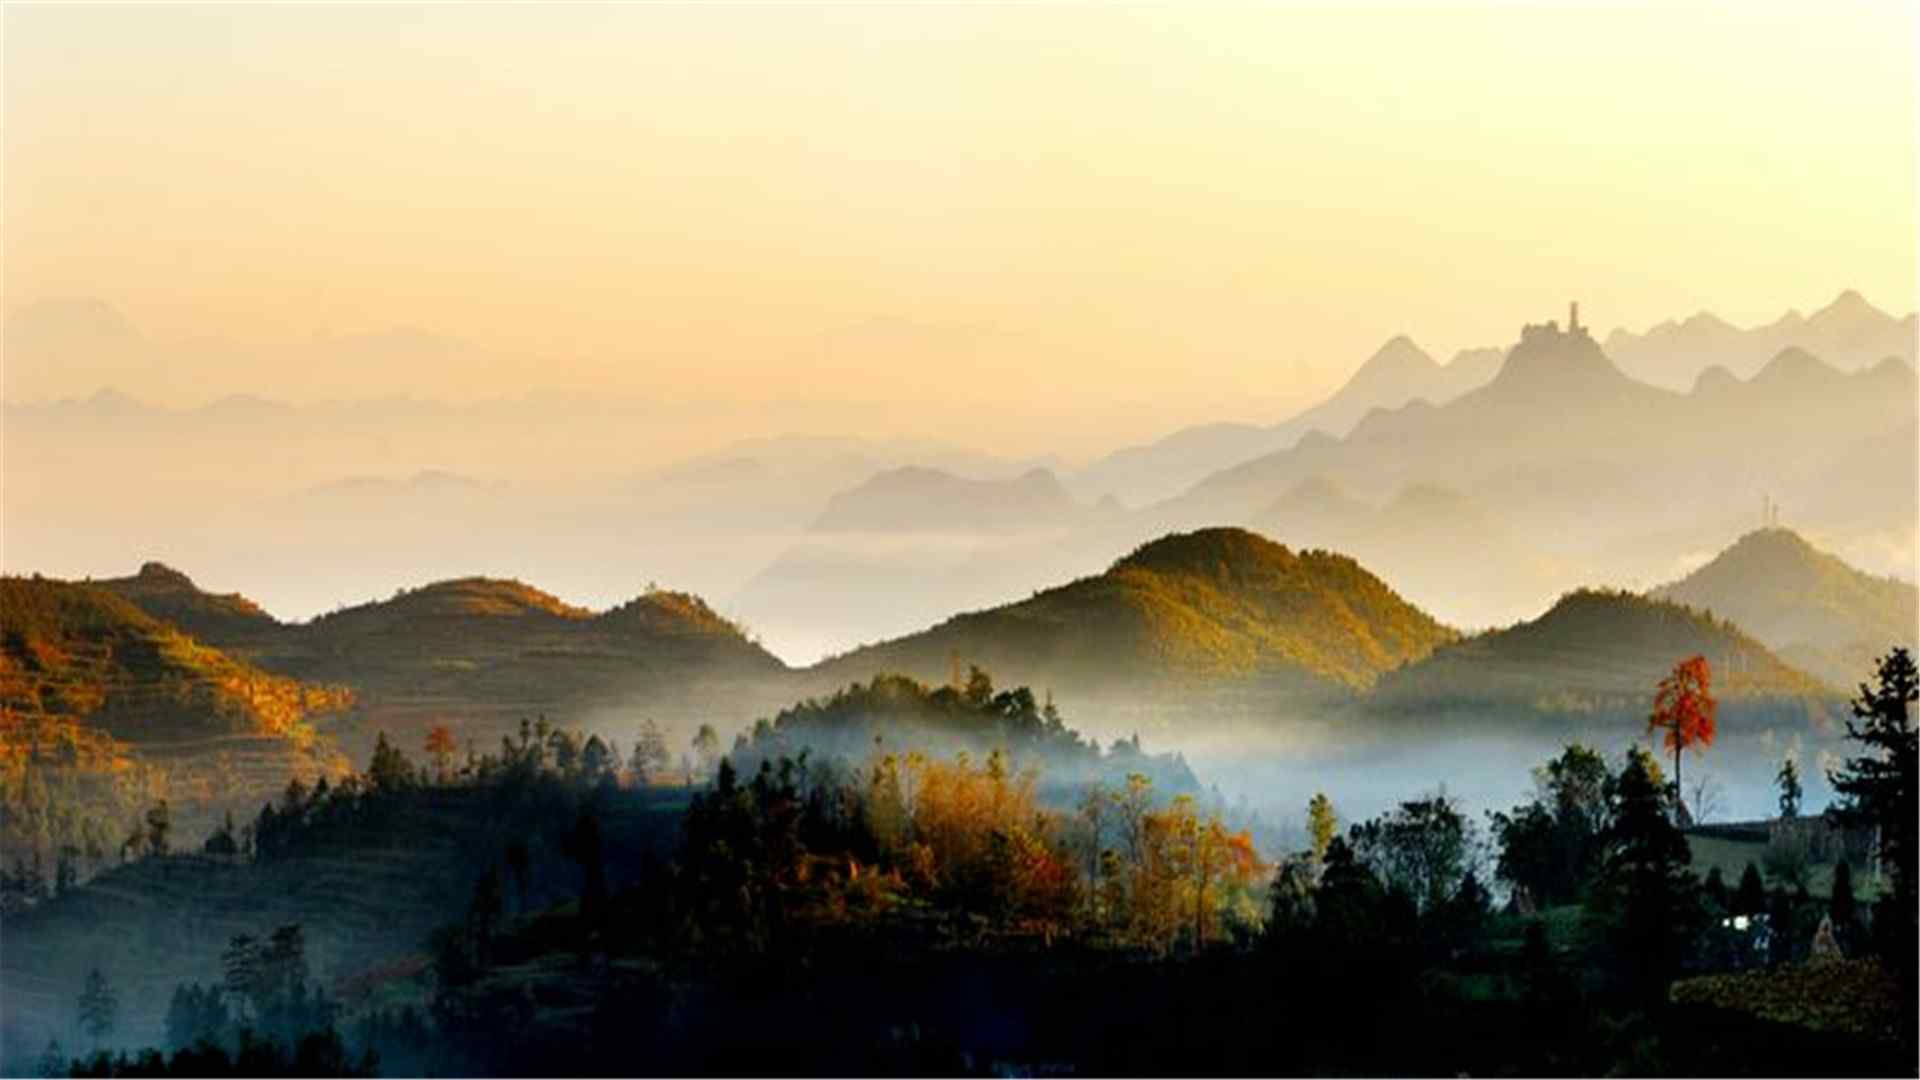 贵州丹霞山自然风光精选壁纸图片下载